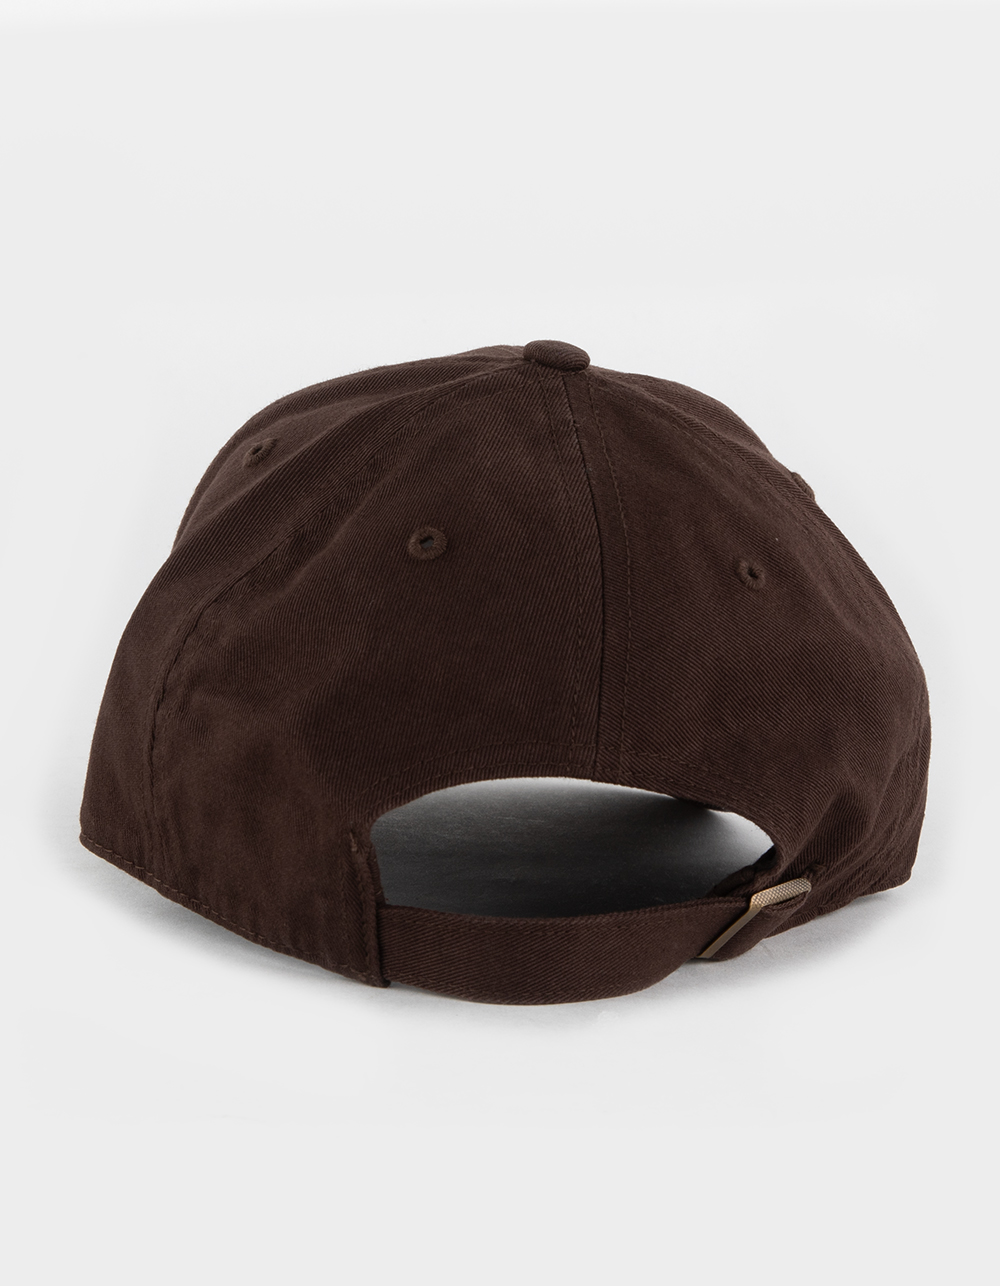 San Diego Padres - Brown MVP Hat, 47 Brand